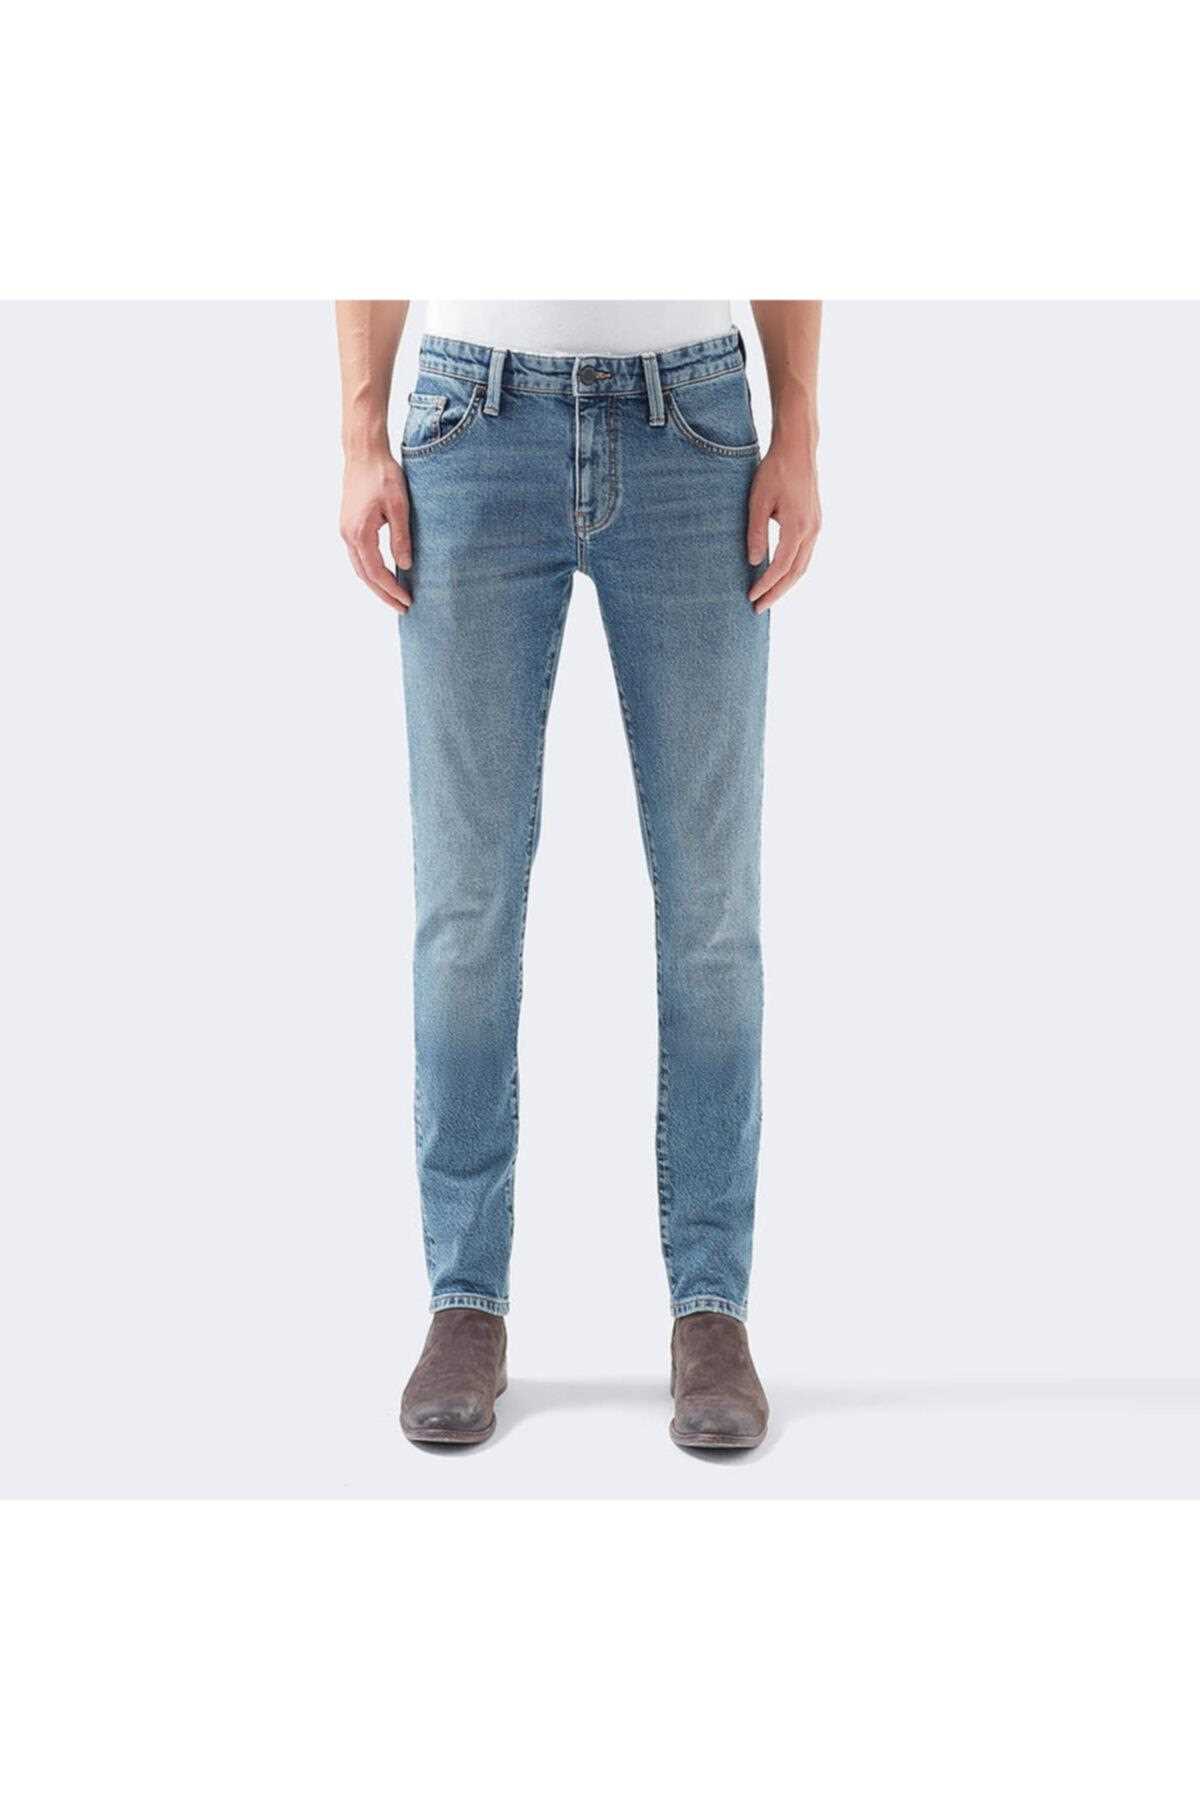 خرید اینترنتی شلوار جین مردانه از استانبول برند ماوی آبی ty213430444